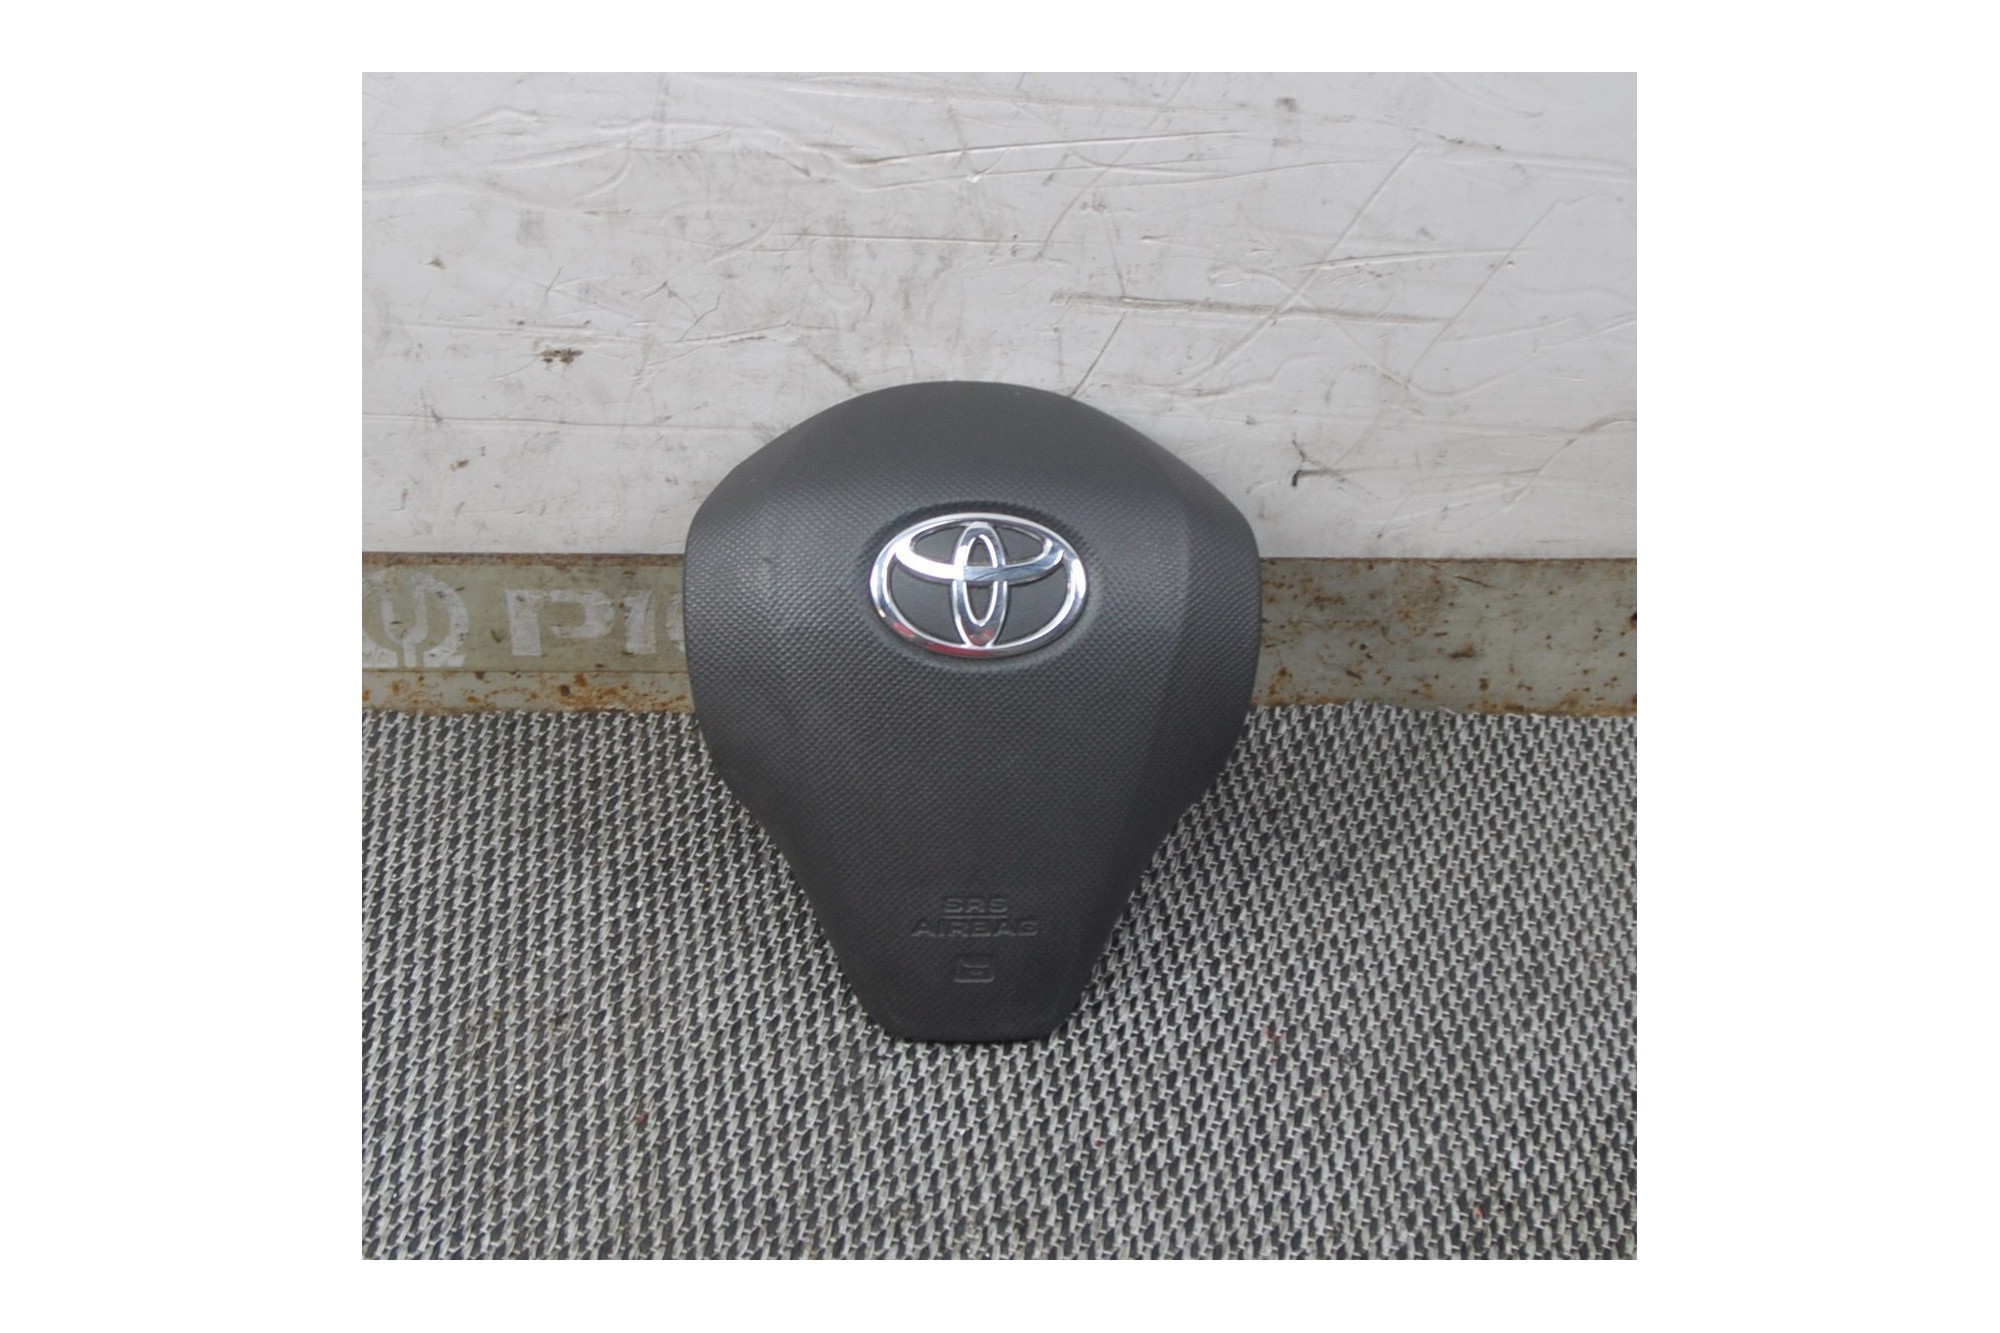 Airbag volante Toyota Yaris dal 2005 al 2011 Cod 45130-0D160-G  2400000079927